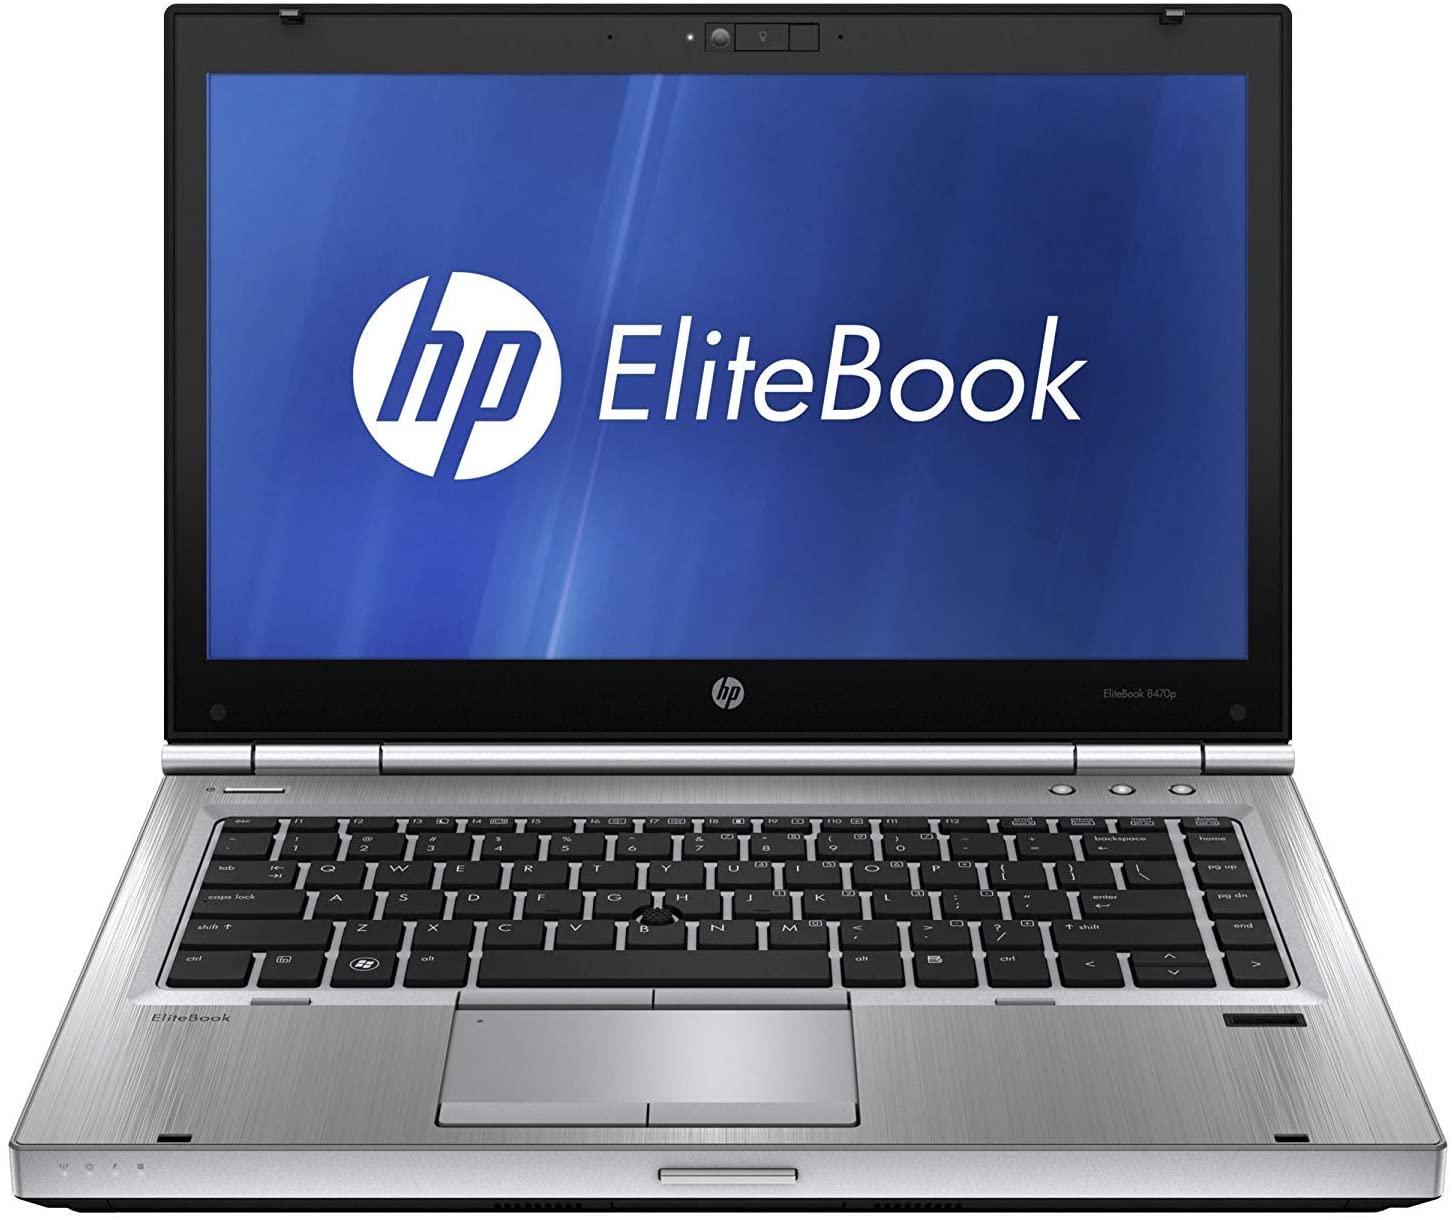 HP Elitebook 8470p-0